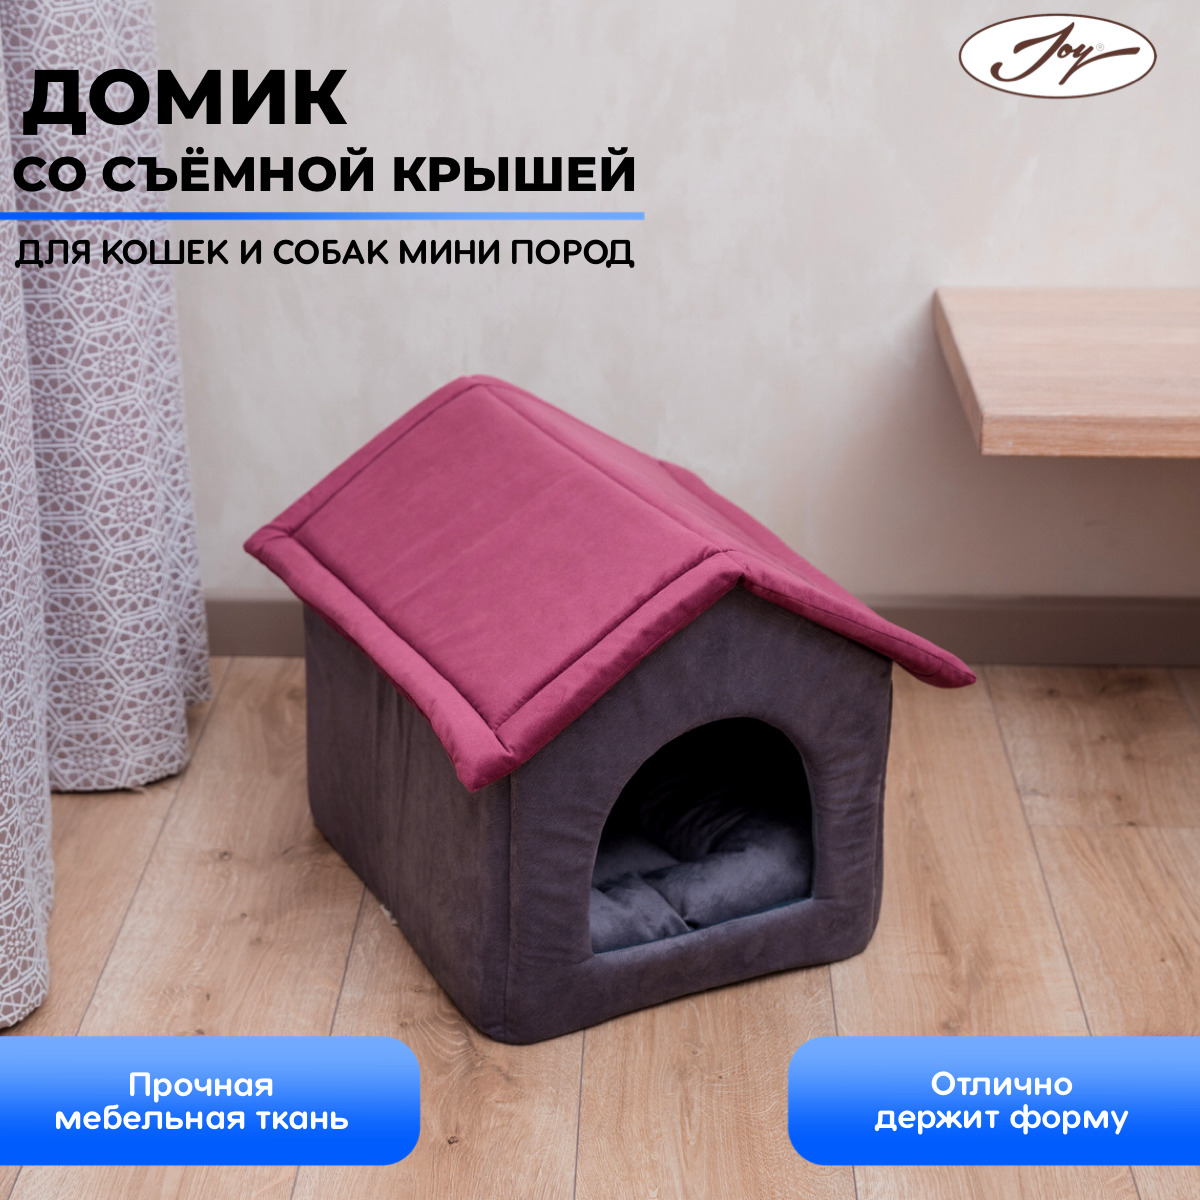 Большие домики для кошек — купить в интернет-магазине Москвы, Санкт-Петербурга, России